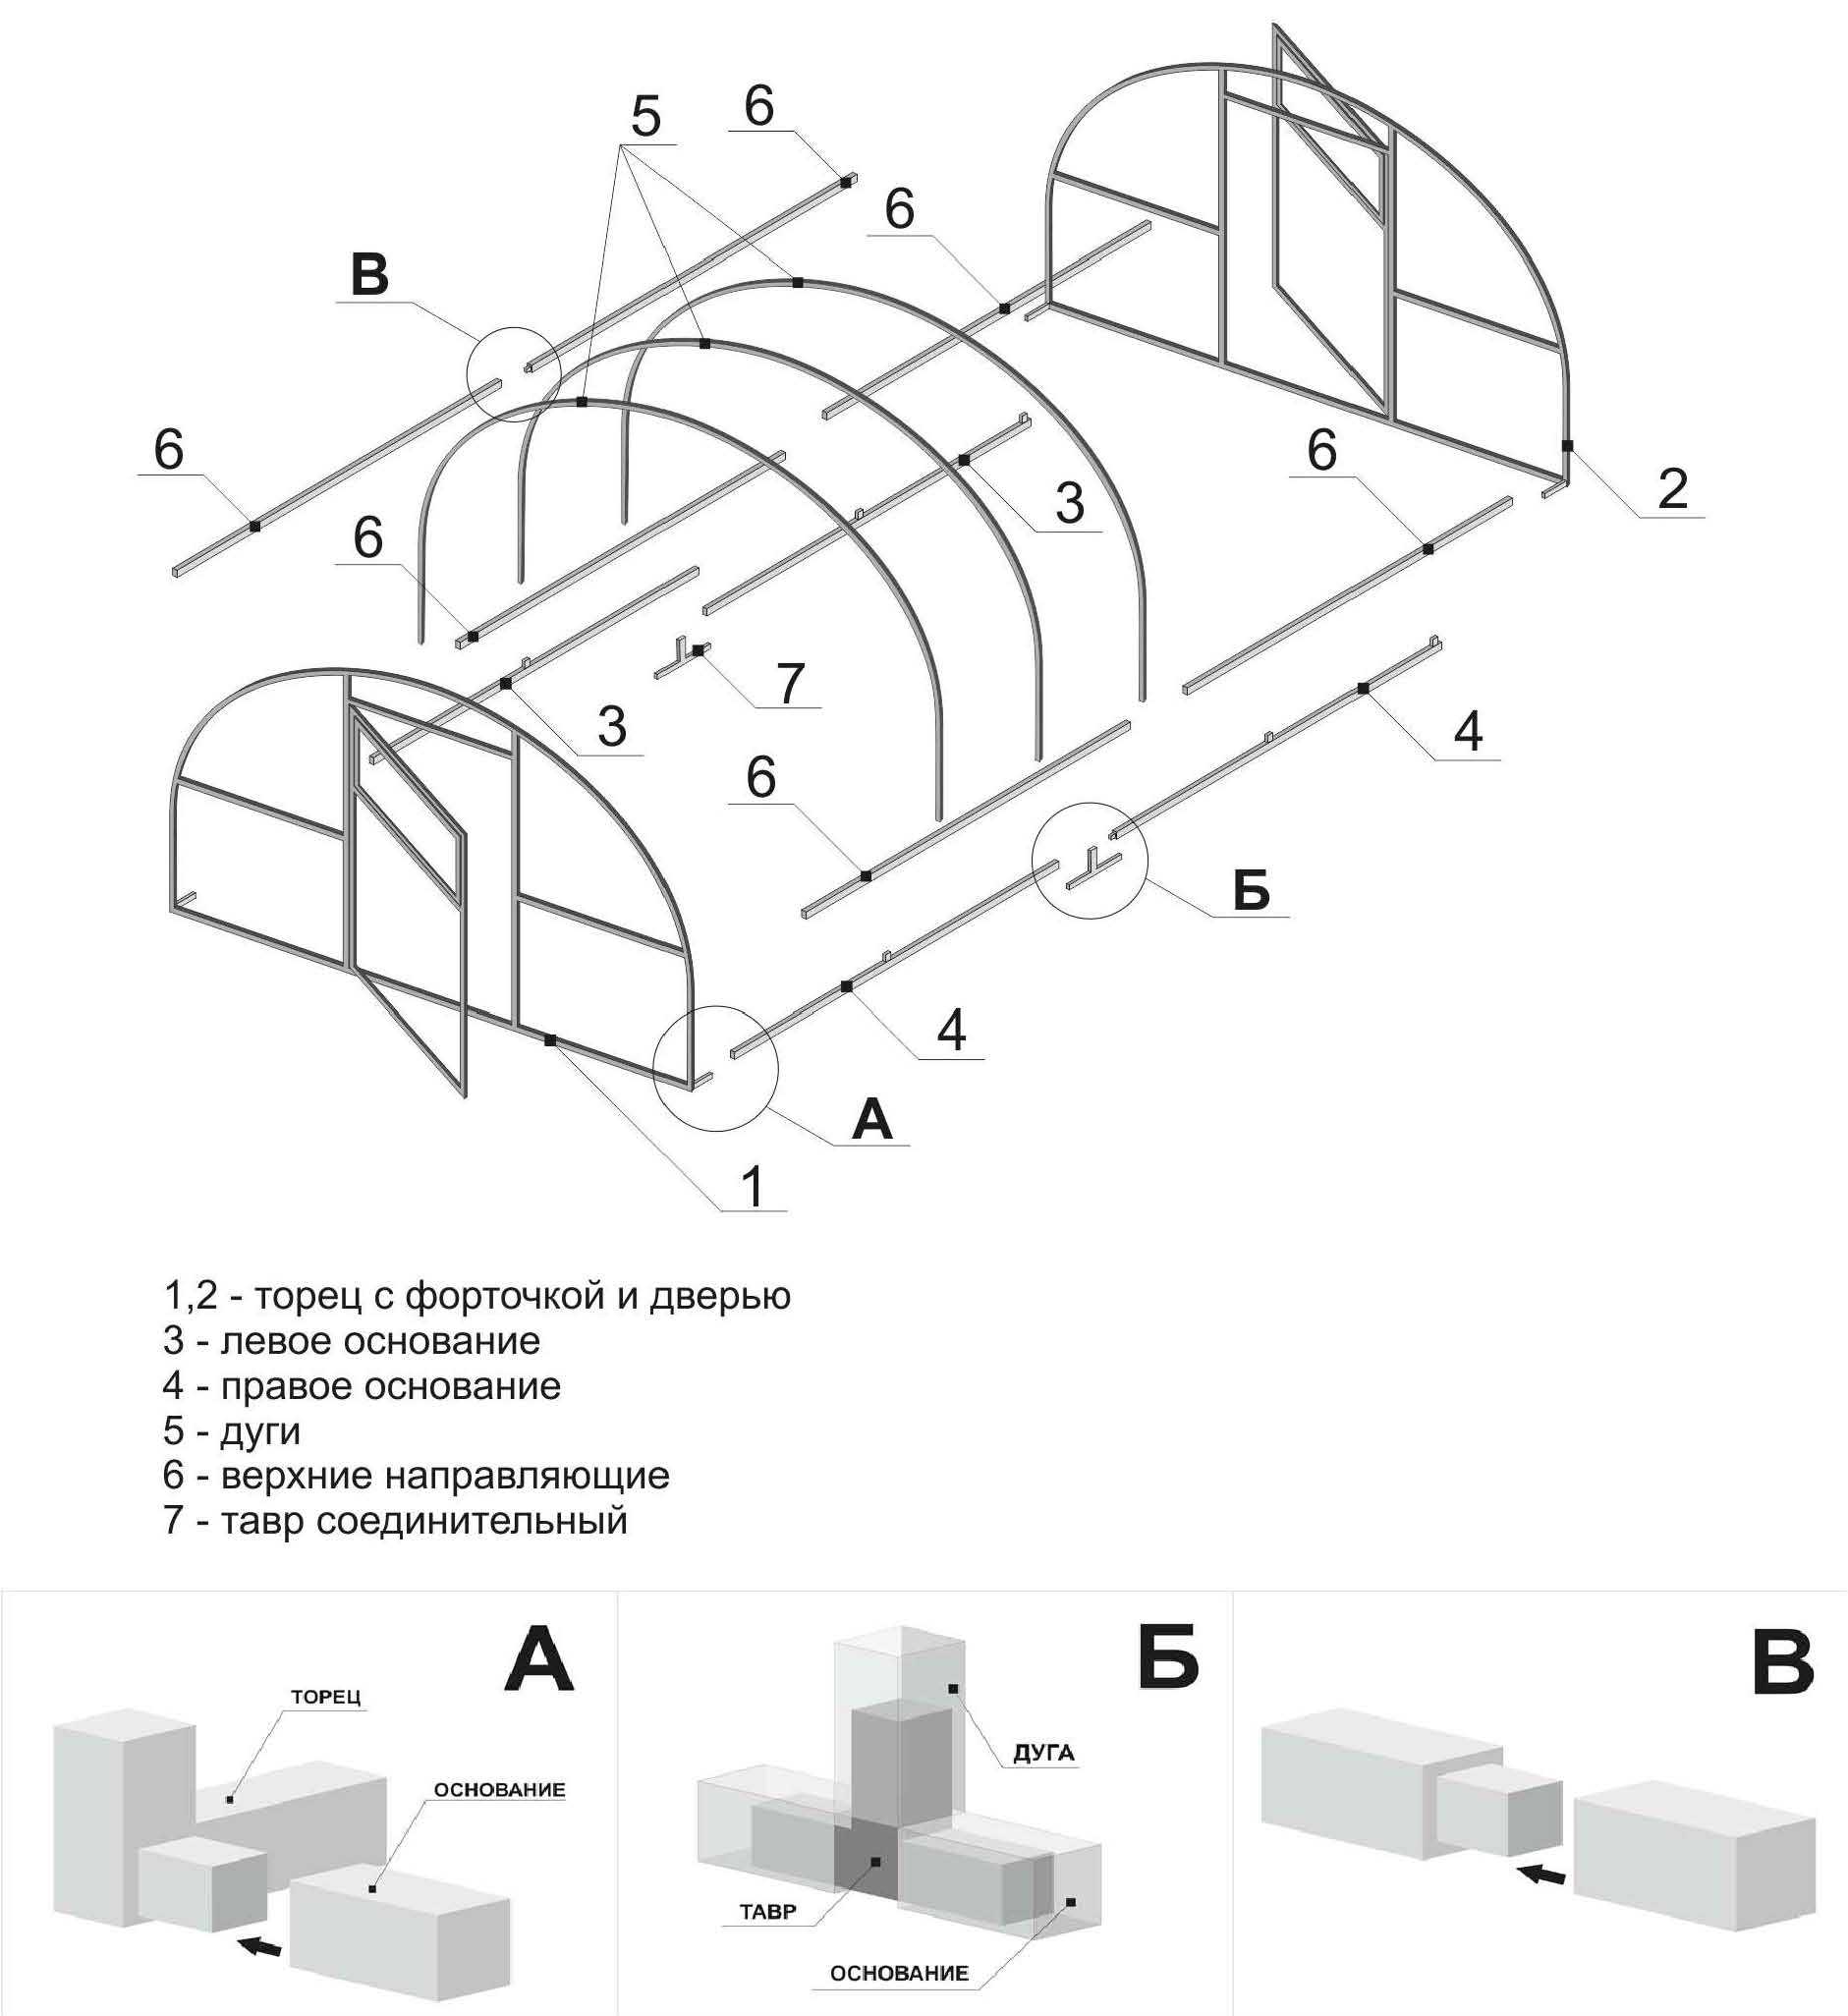 Пошаговая инструкция сборки теплицы из поликарбоната